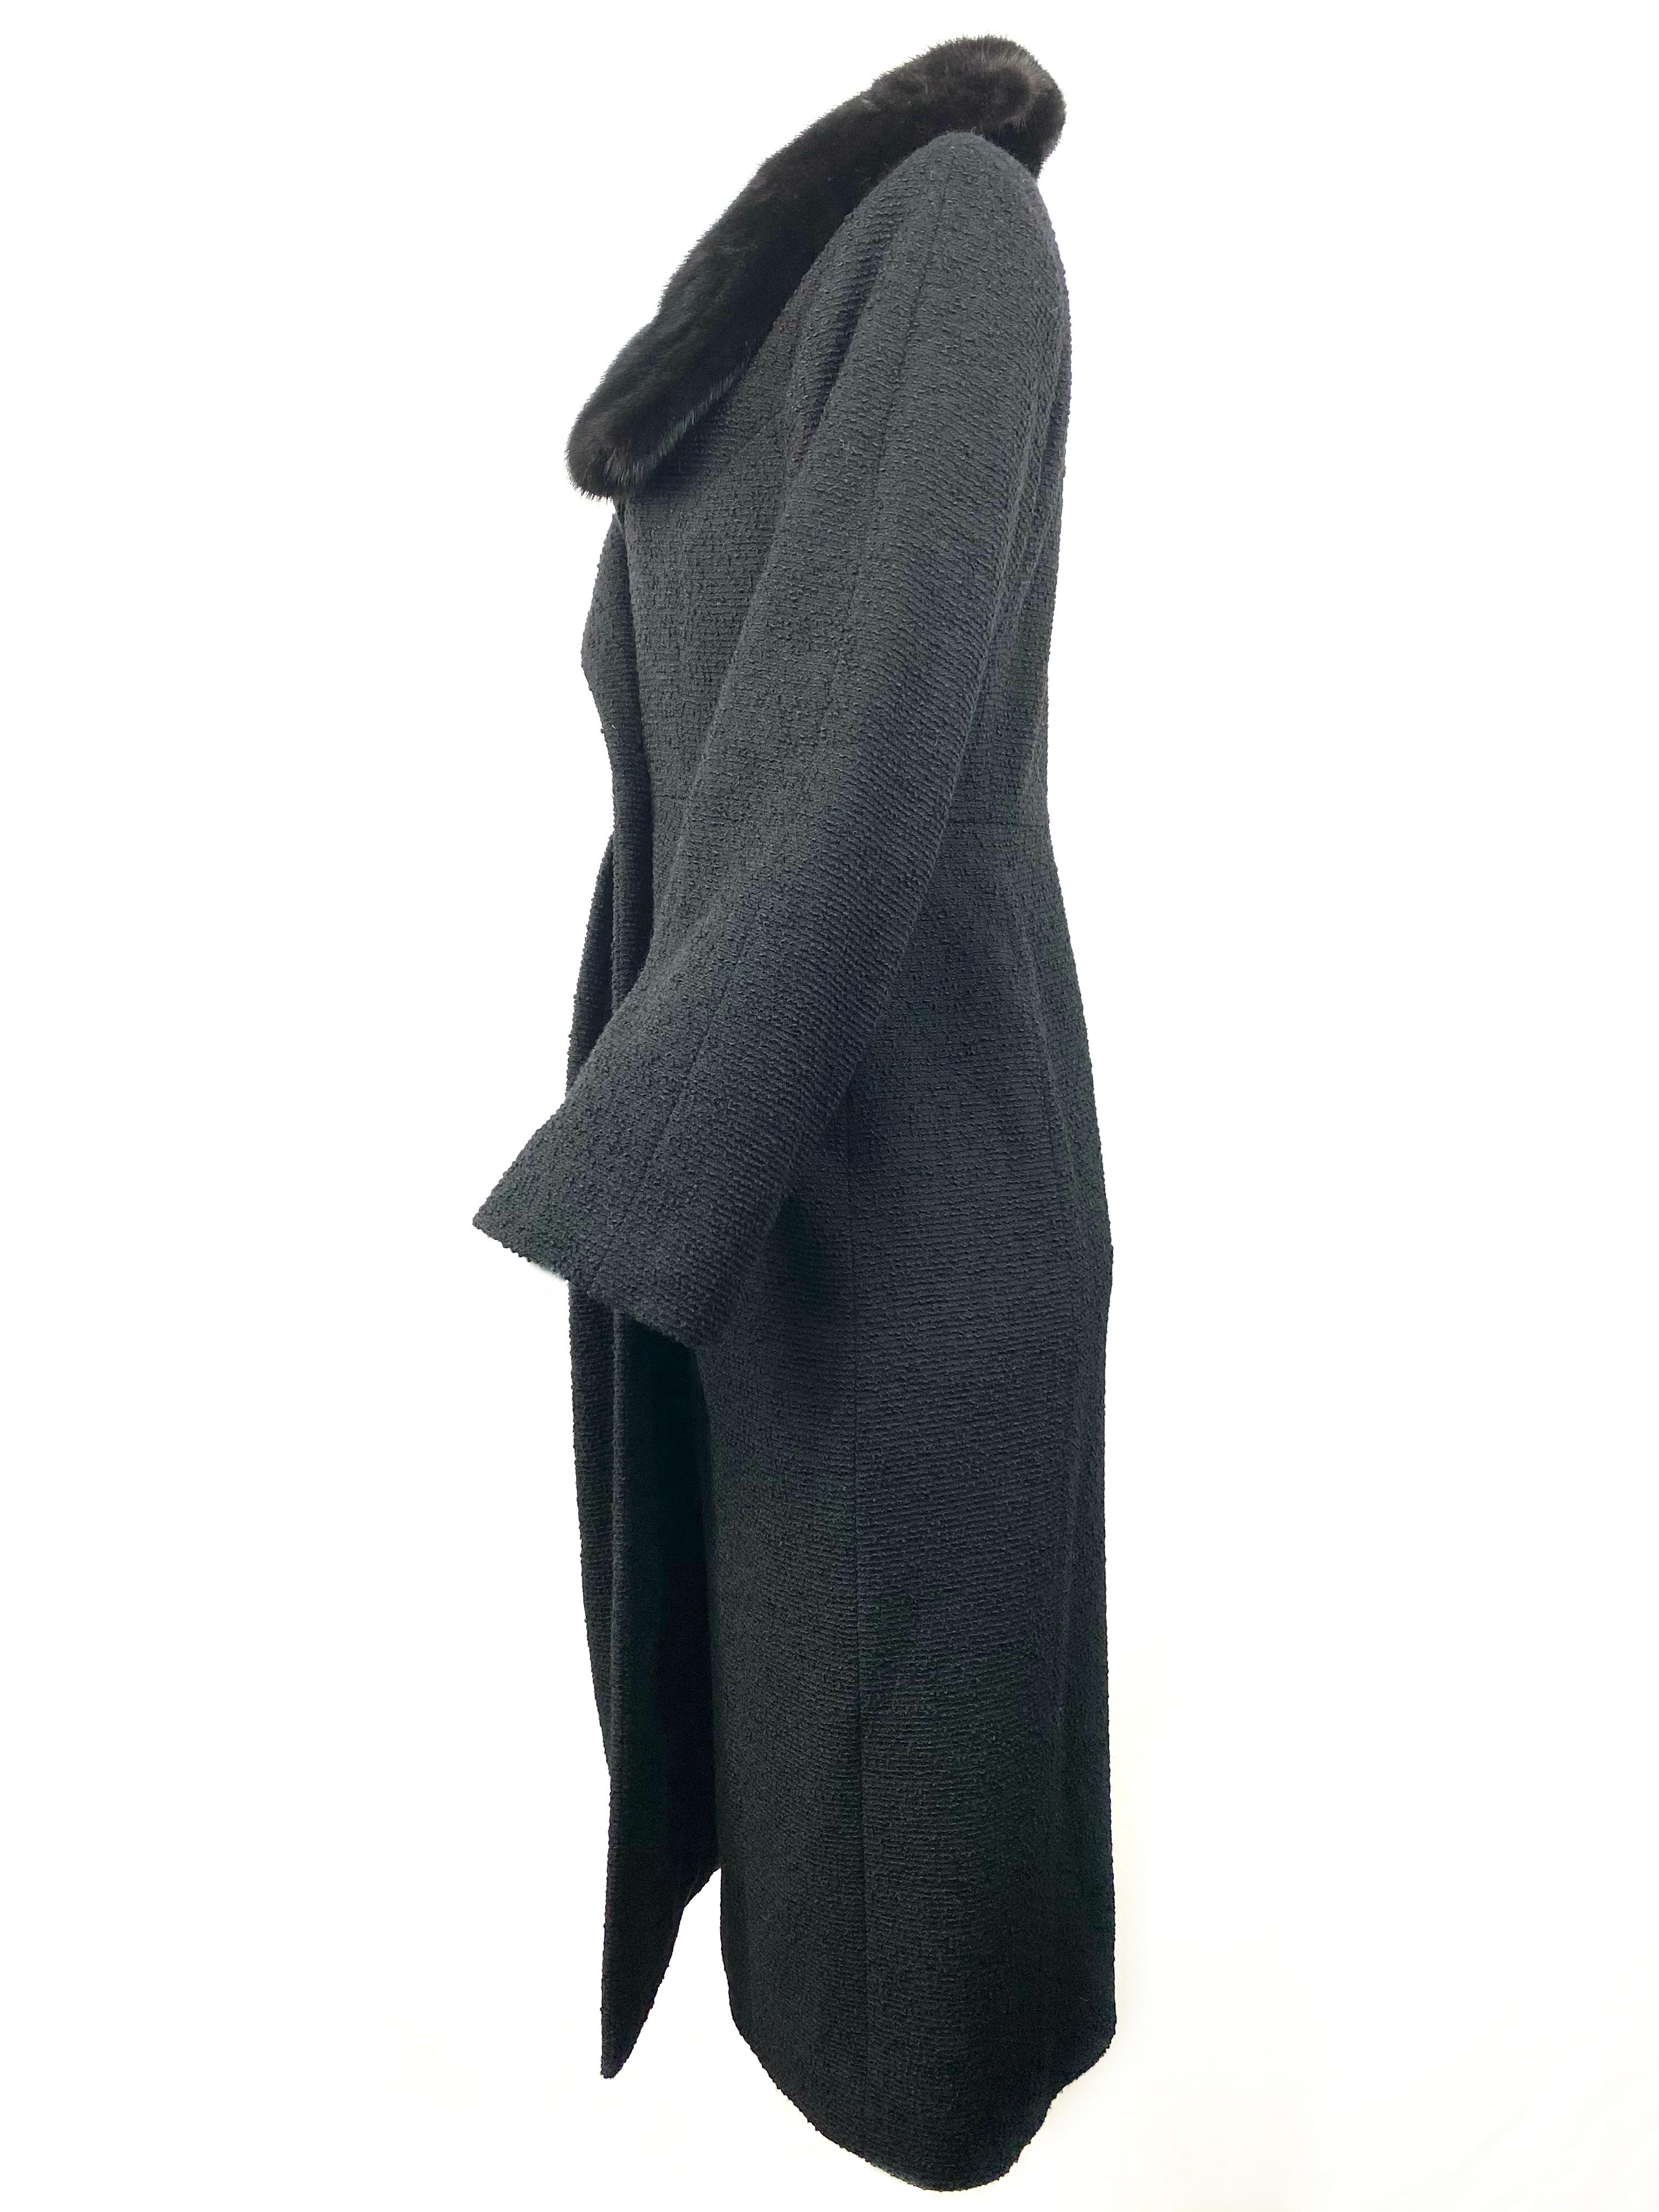 Christian Dior - Veste manteau en tweed de laine noir et fourrure, taille 40 2